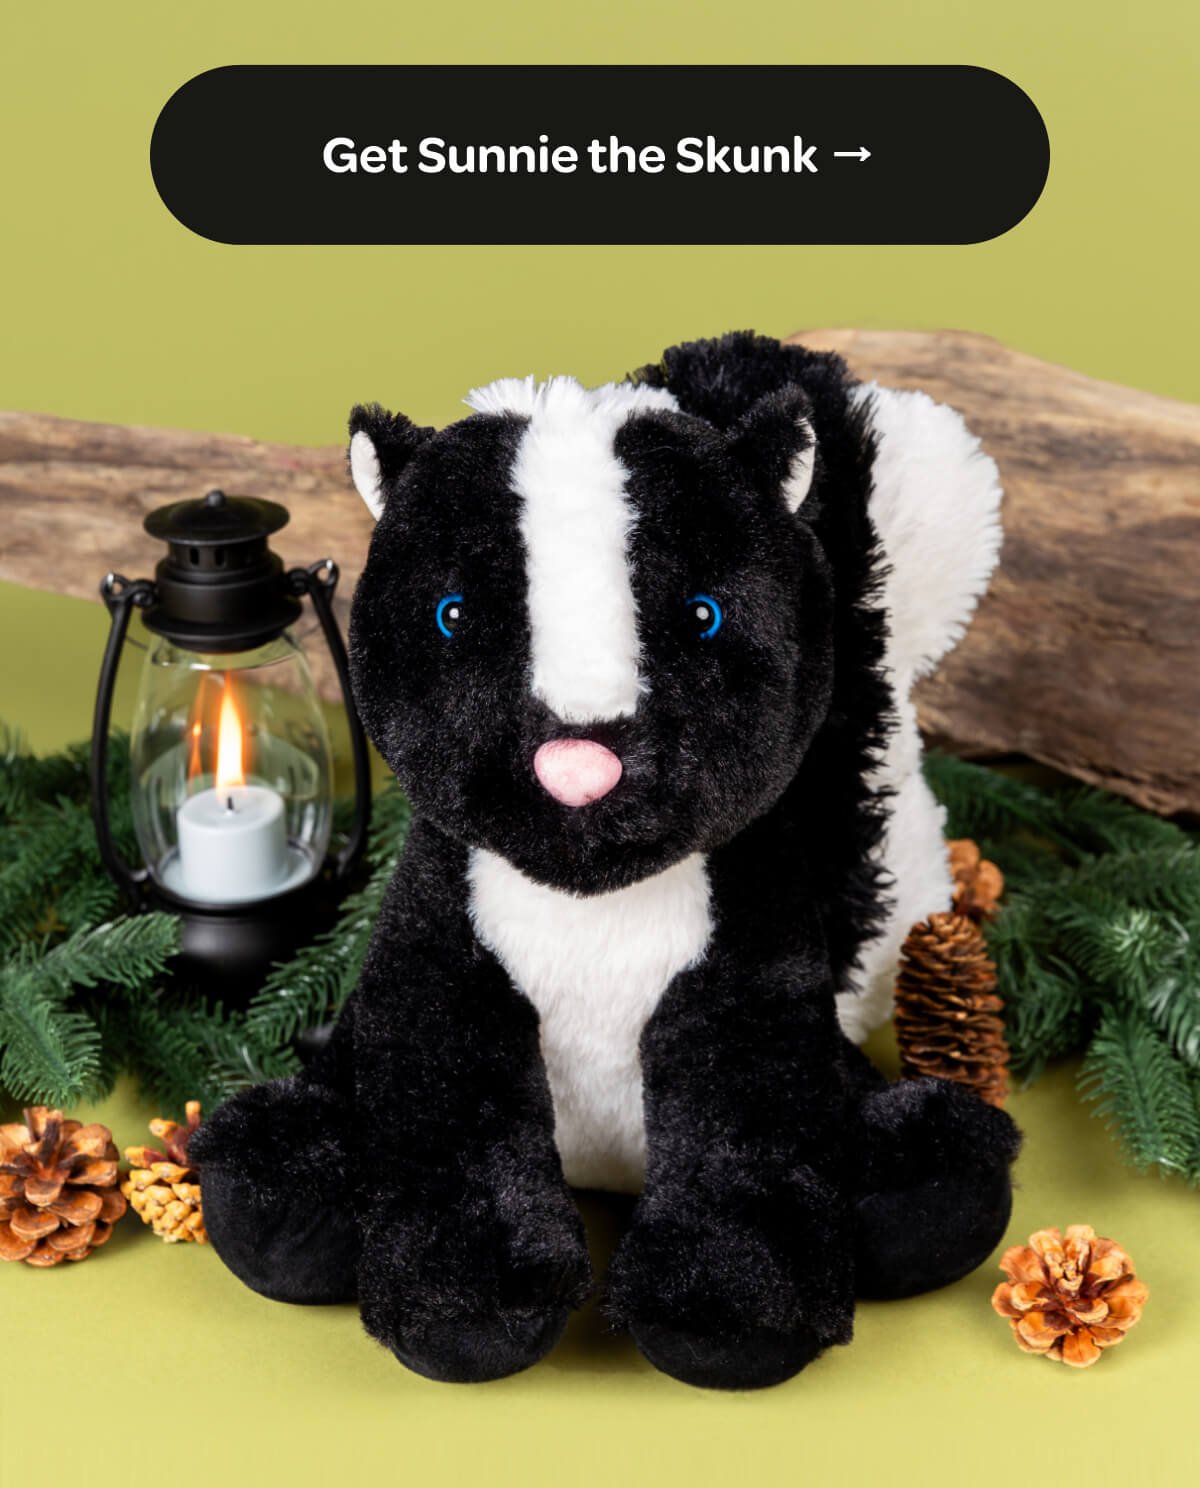 [Get Sunnie the Skunk]